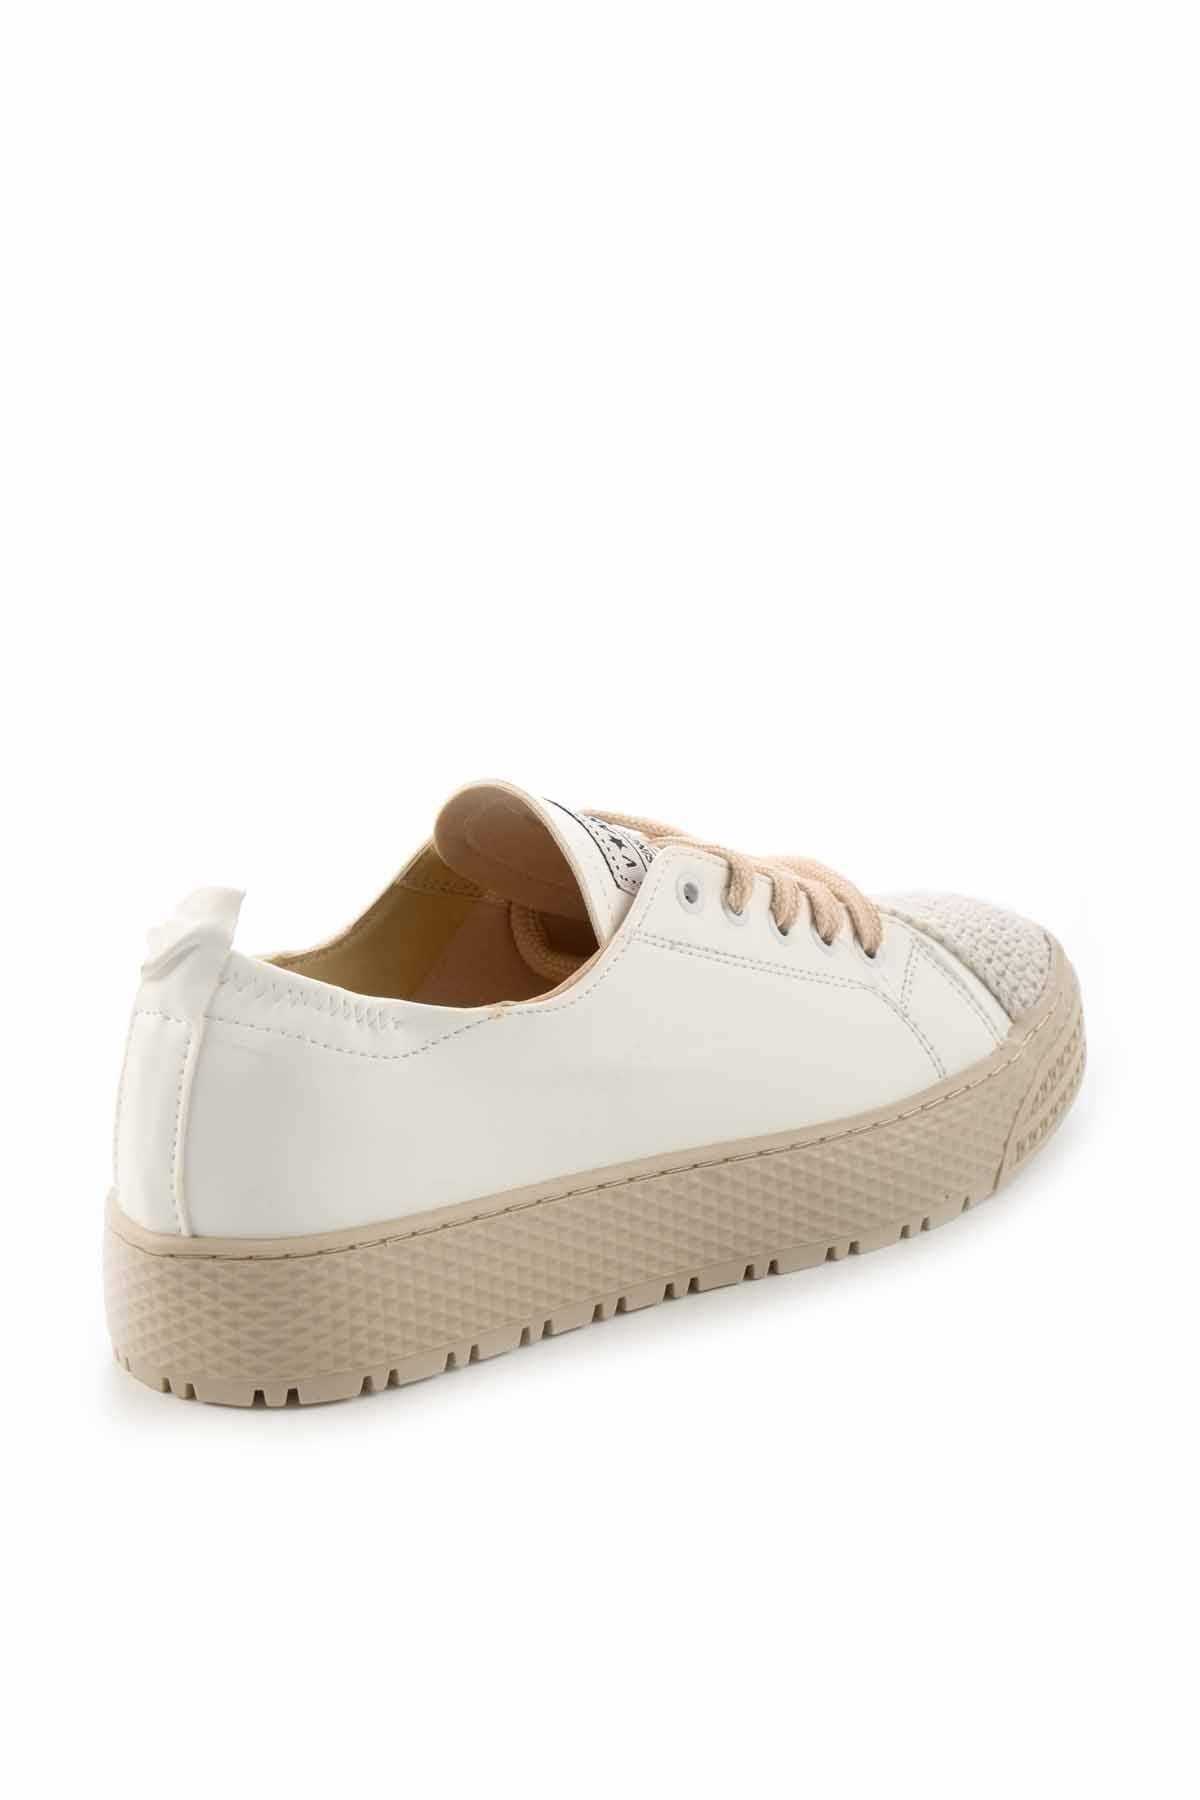 فروش کفش اسپرت زنانه برند بامبی رنگ سفید ty234058660